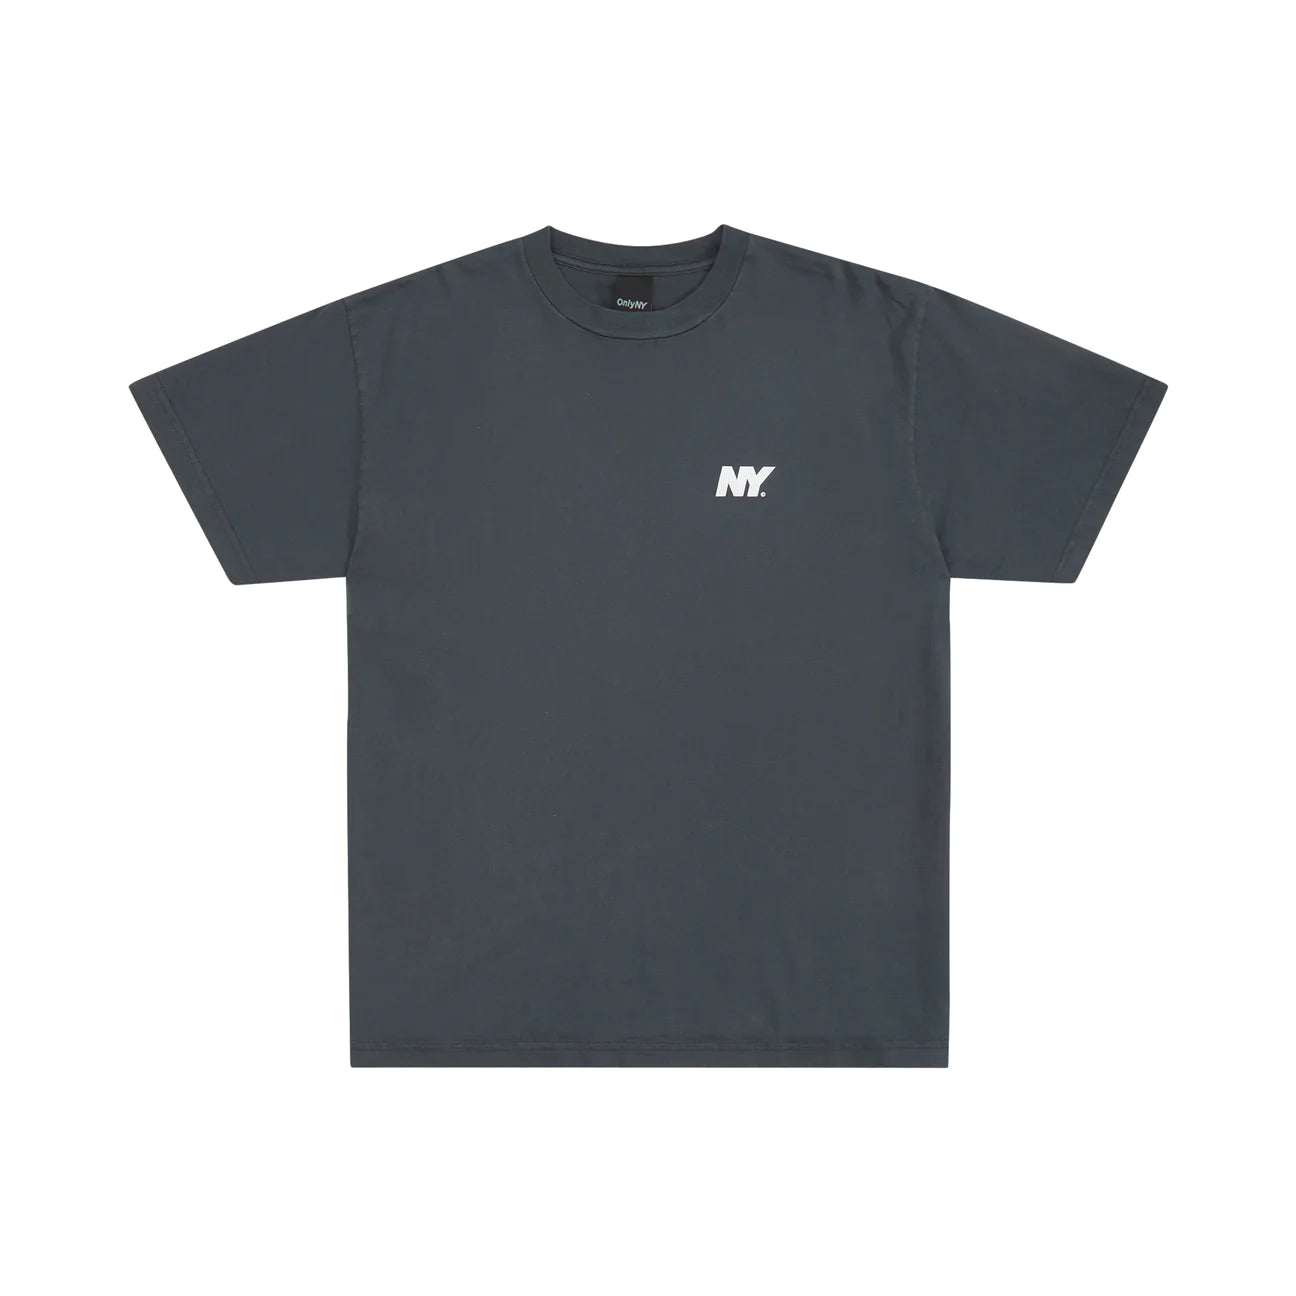 Only NY NY Speed Logo T-Shirt - Vintage Black